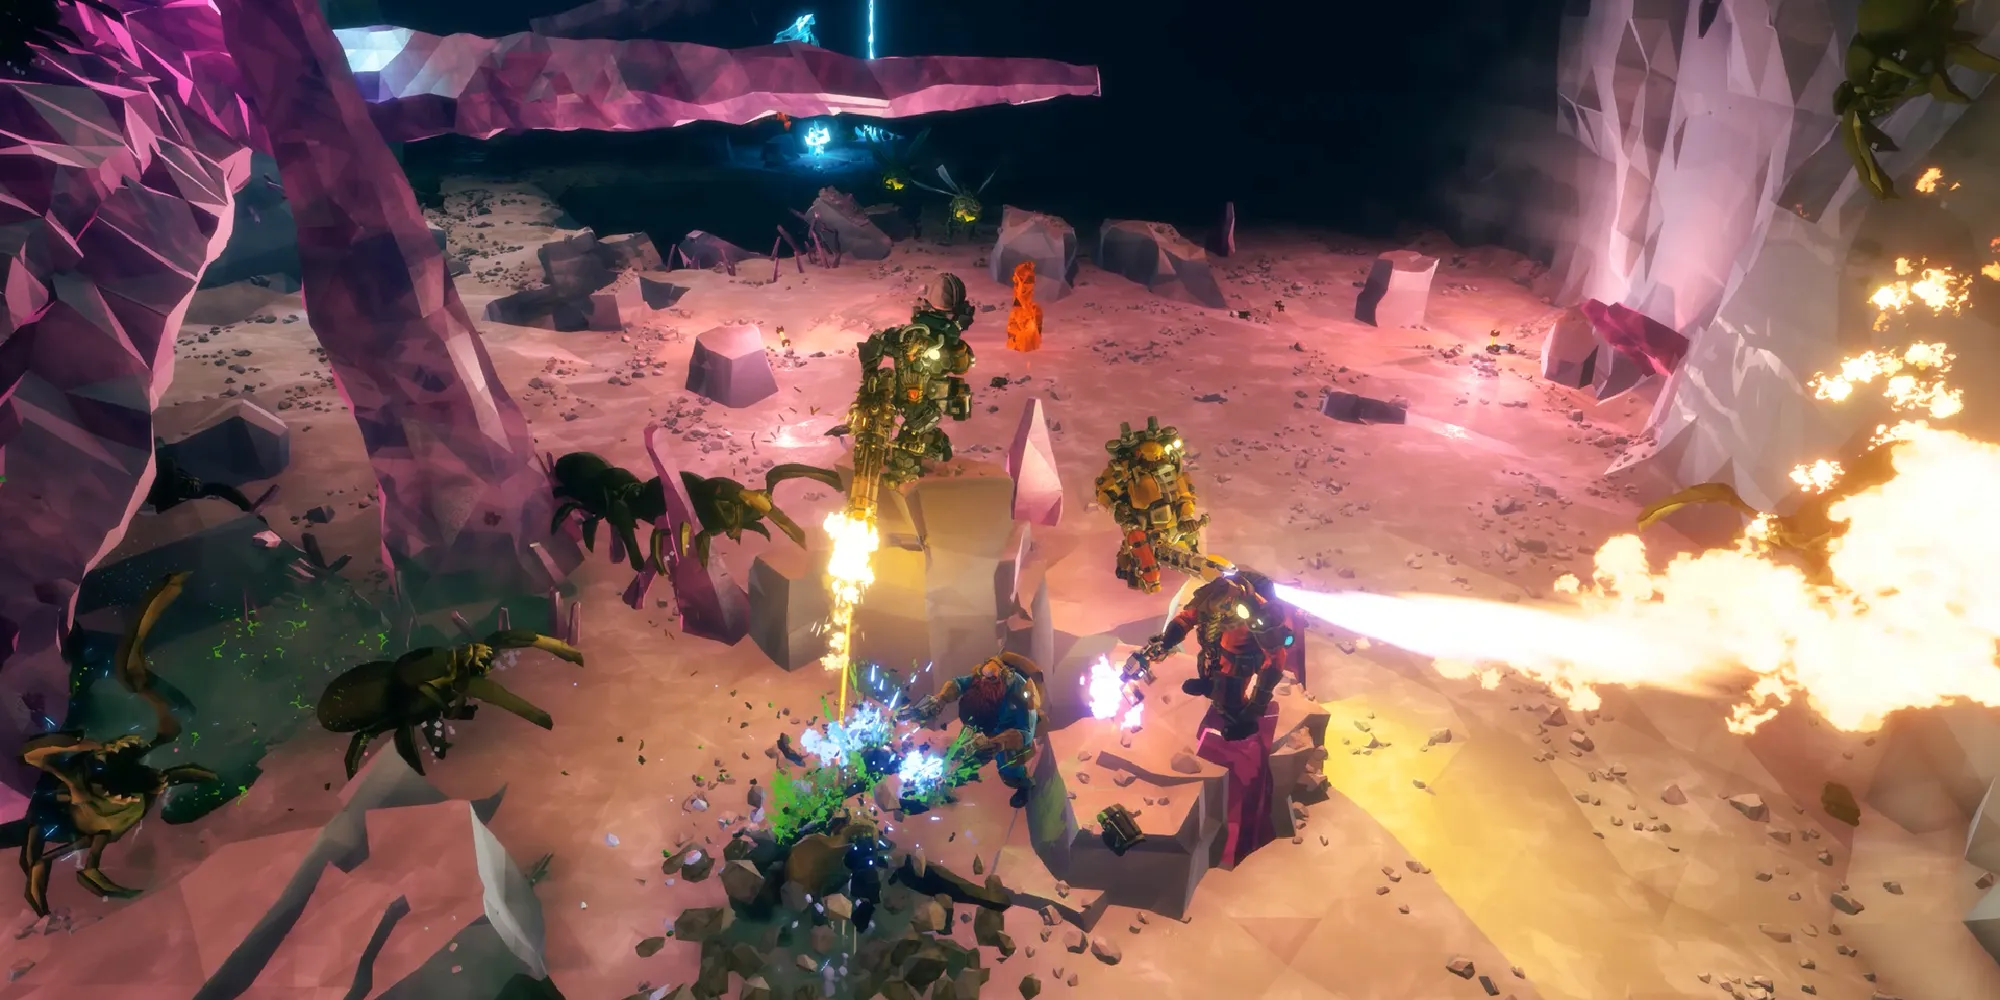 Captura de pantalla mostrando el combate y los monstruos de Deep Rock Galactic